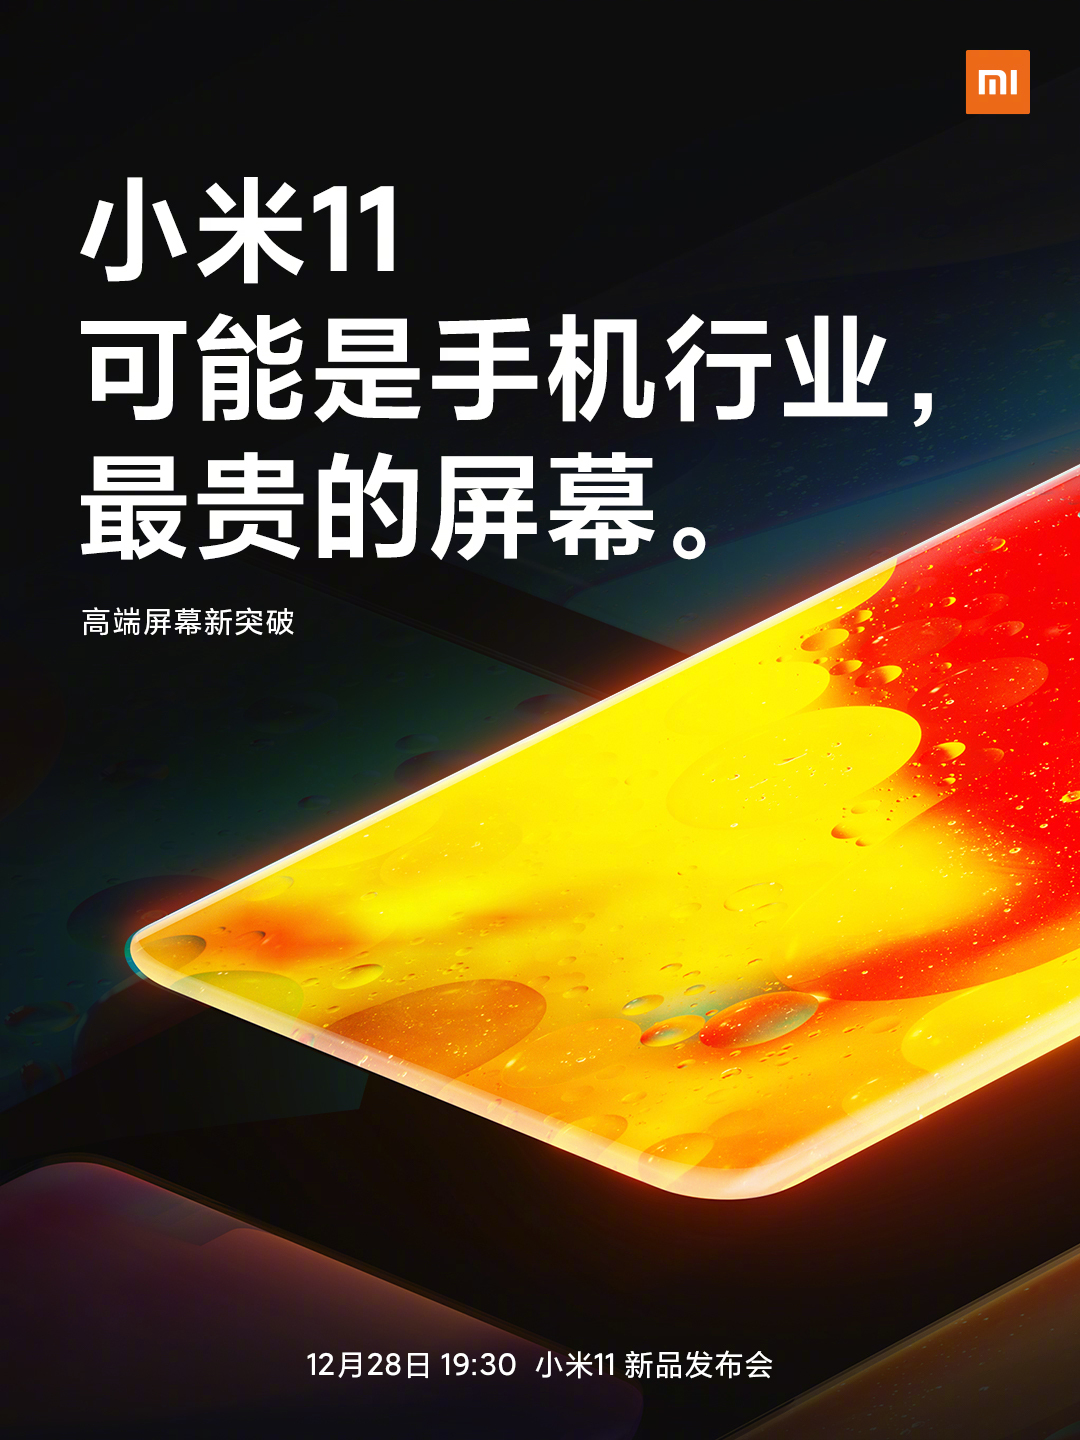  Стали известны новые детали о дисплее Xiaomi Mi 11 Xiaomi  - samyj_dorogoj_v_industrii_novye_detali_o_displee_xiaomi_mi_11_1